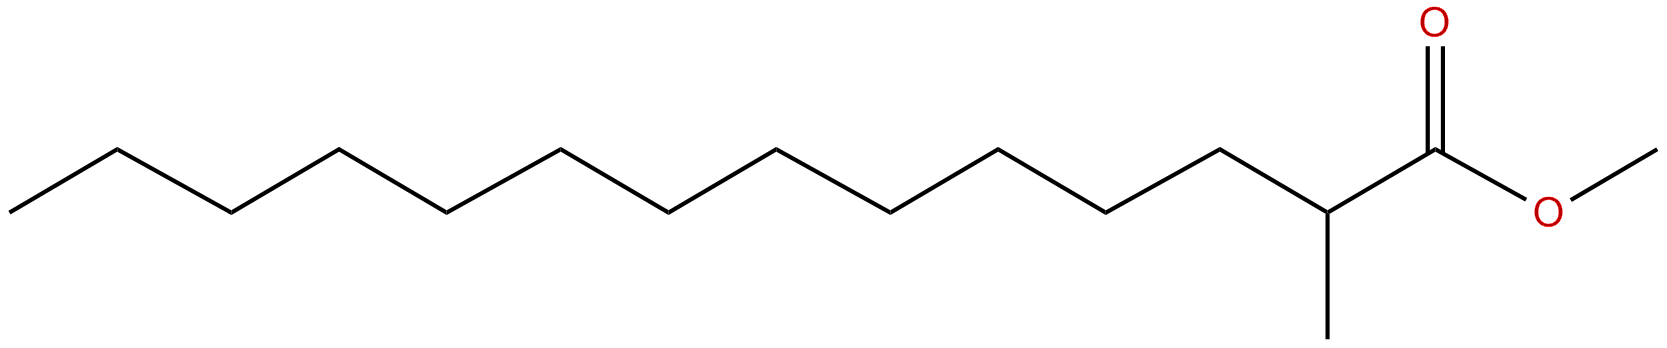 Image of methyl 2-methyltetradecanoate